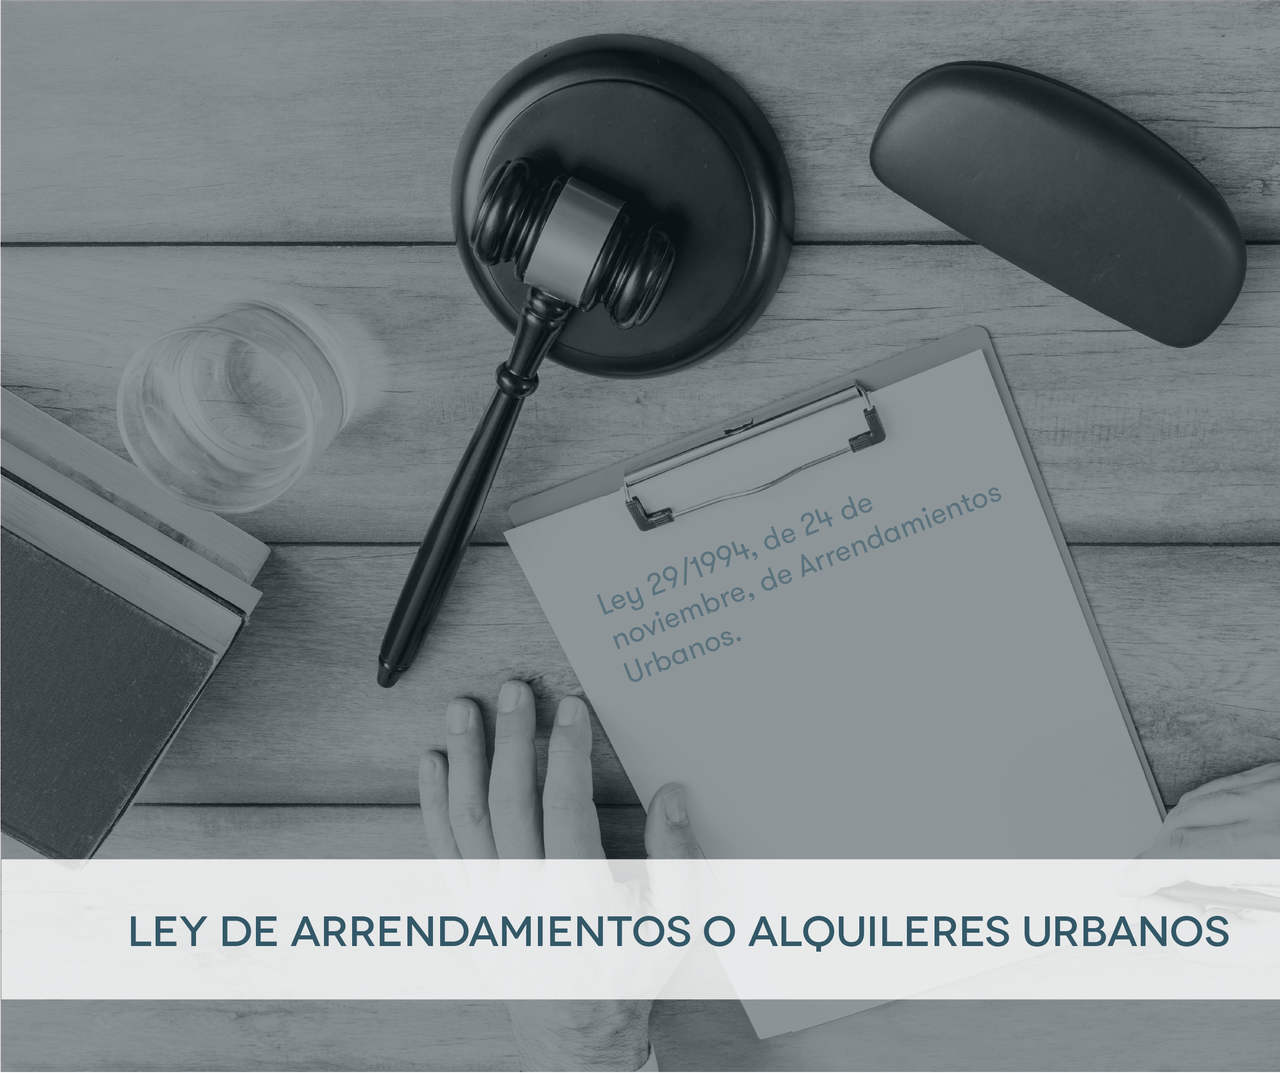 Ley de Arrendamientos Urbanos (LAU) o Ley de alquileres